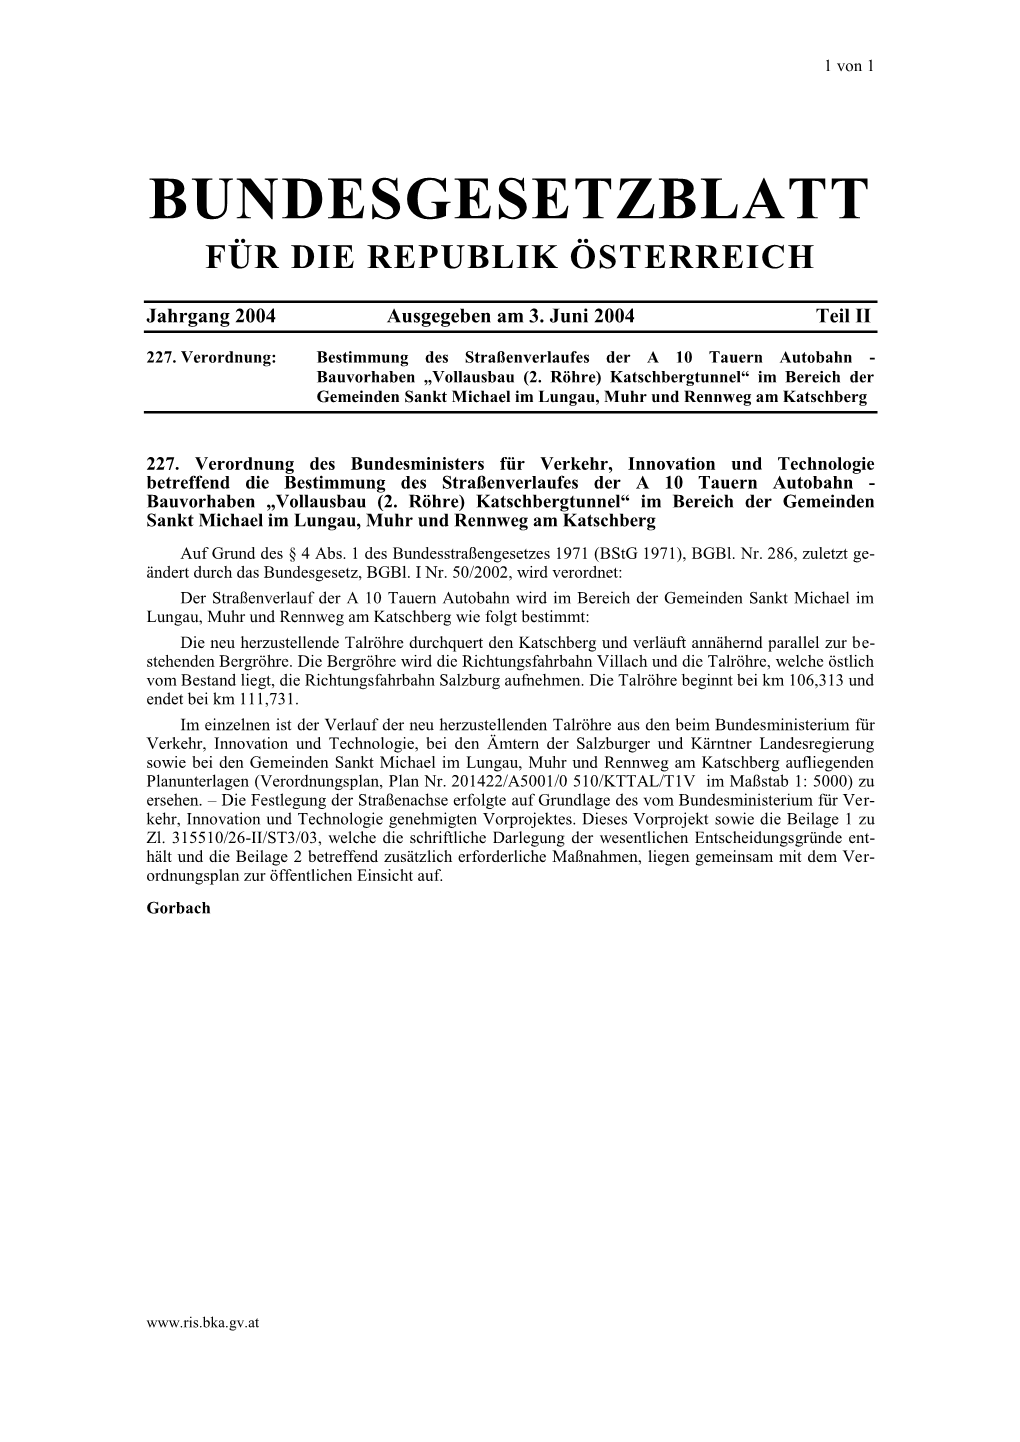 Bundesgesetzblatt Für Die Republik Österreich